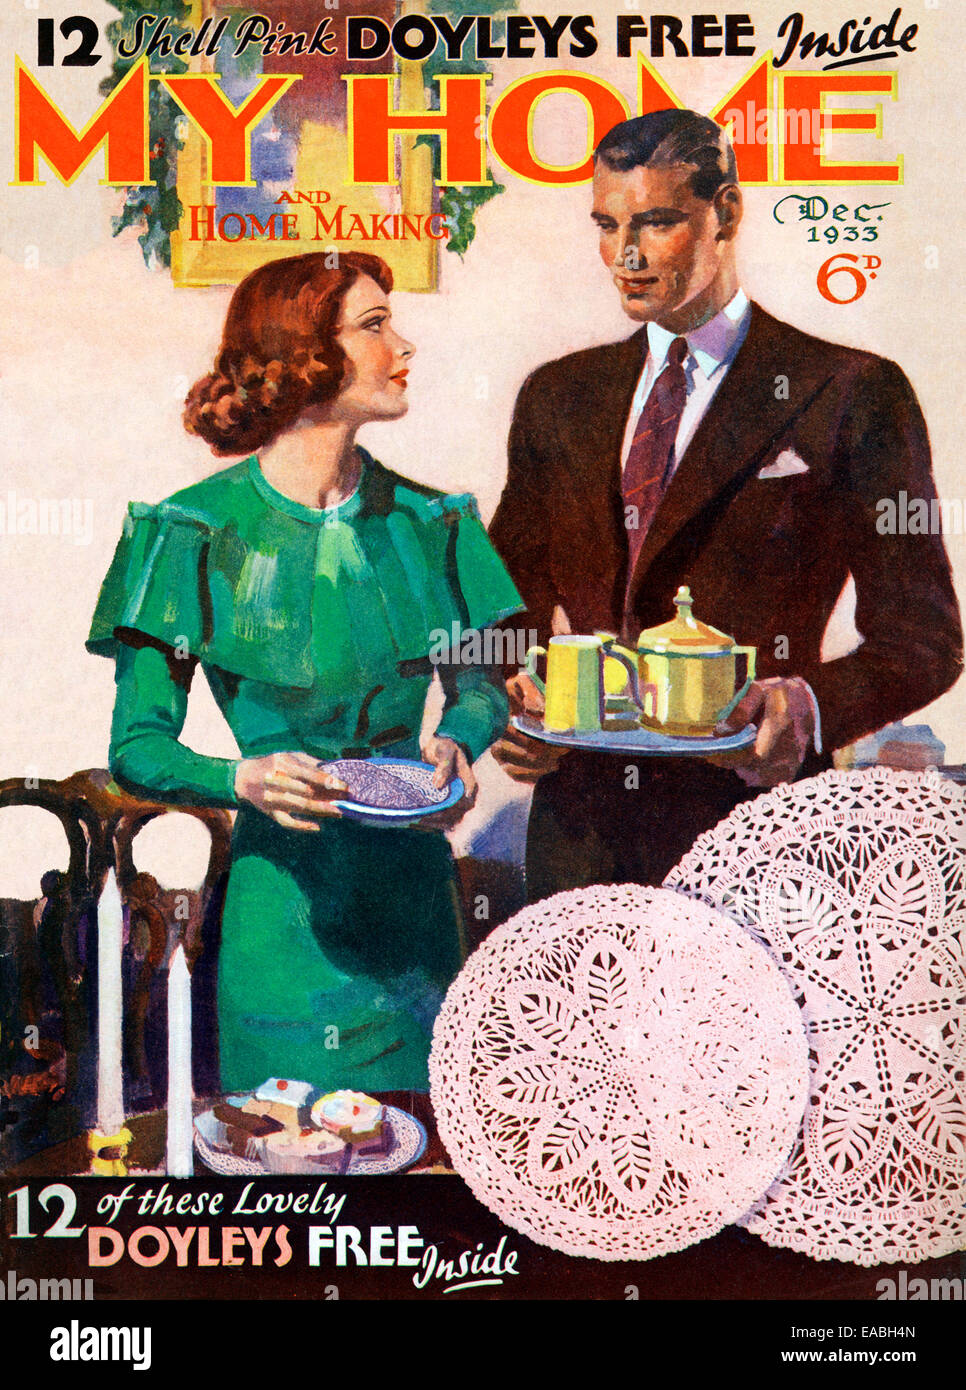 La mia casa, Tea Time, 1933 la copertura della casa inglese e lifestyle magazine per il nuovo suburban middle class, teatime a casa e un servizio gratuito di offerta doyley Foto Stock